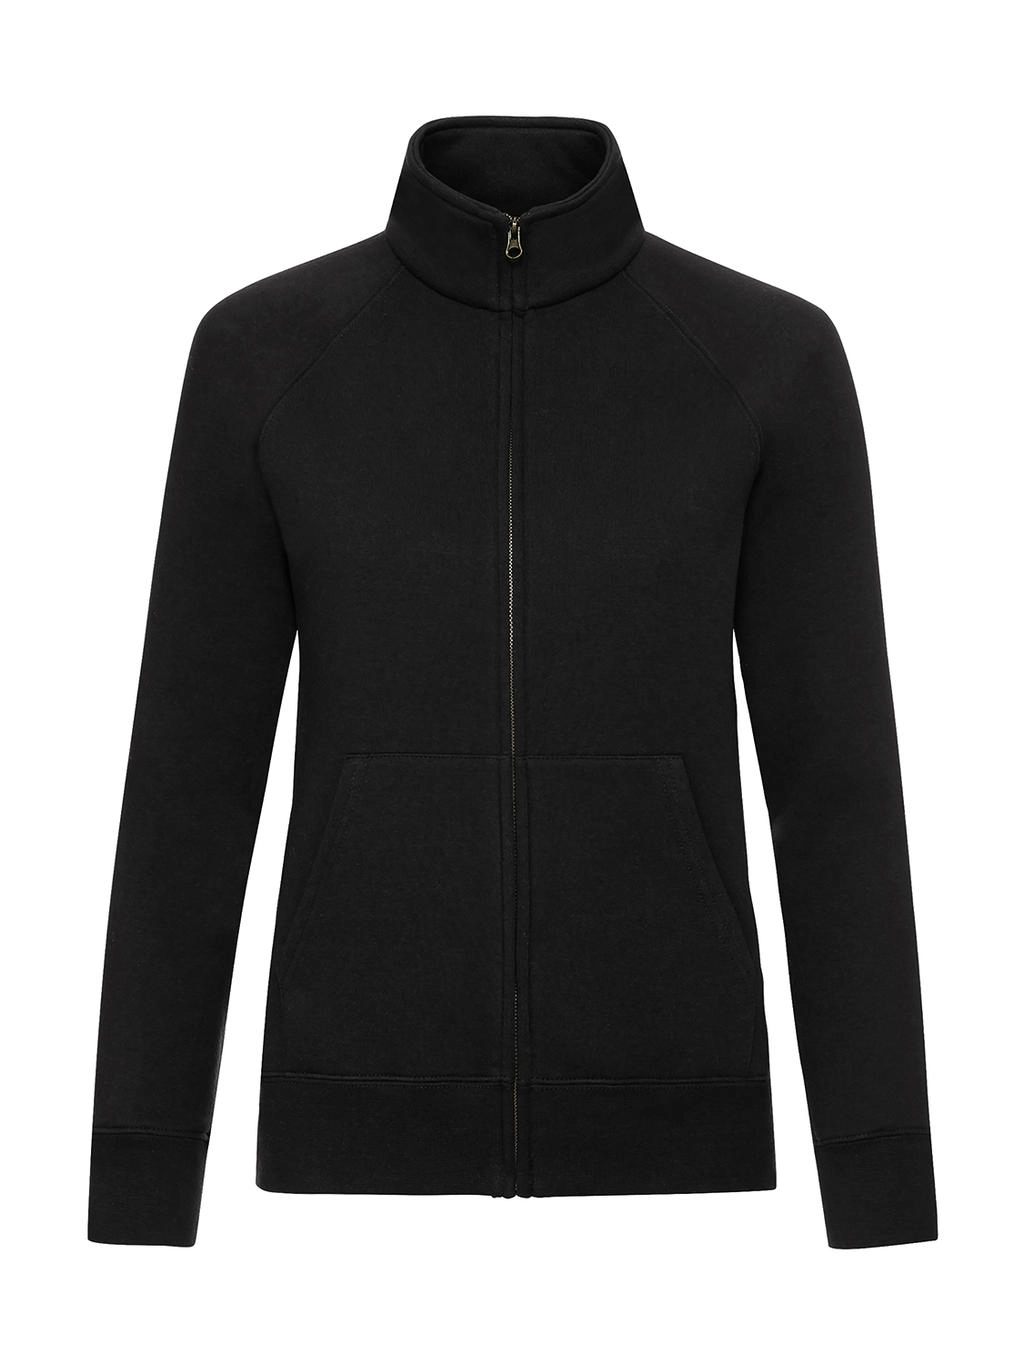 Ladies` Premium Sweat Jacket zum Besticken und Bedrucken in der Farbe Black mit Ihren Logo, Schriftzug oder Motiv.